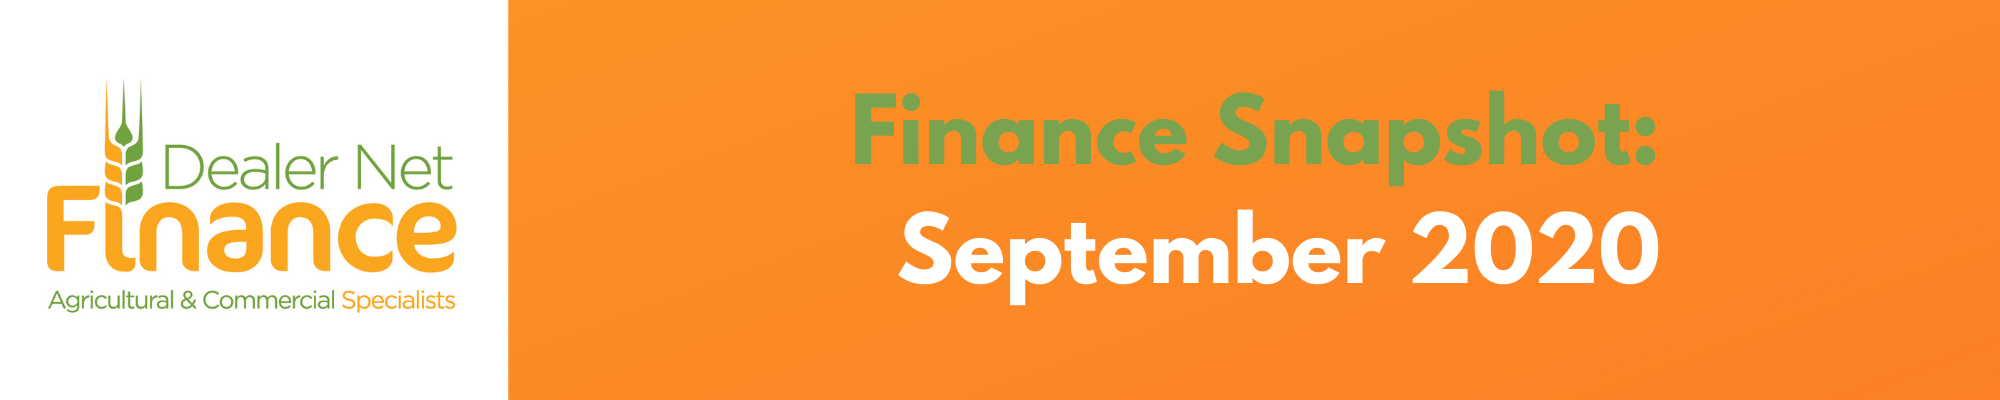 Finance Snapshot – September 2020